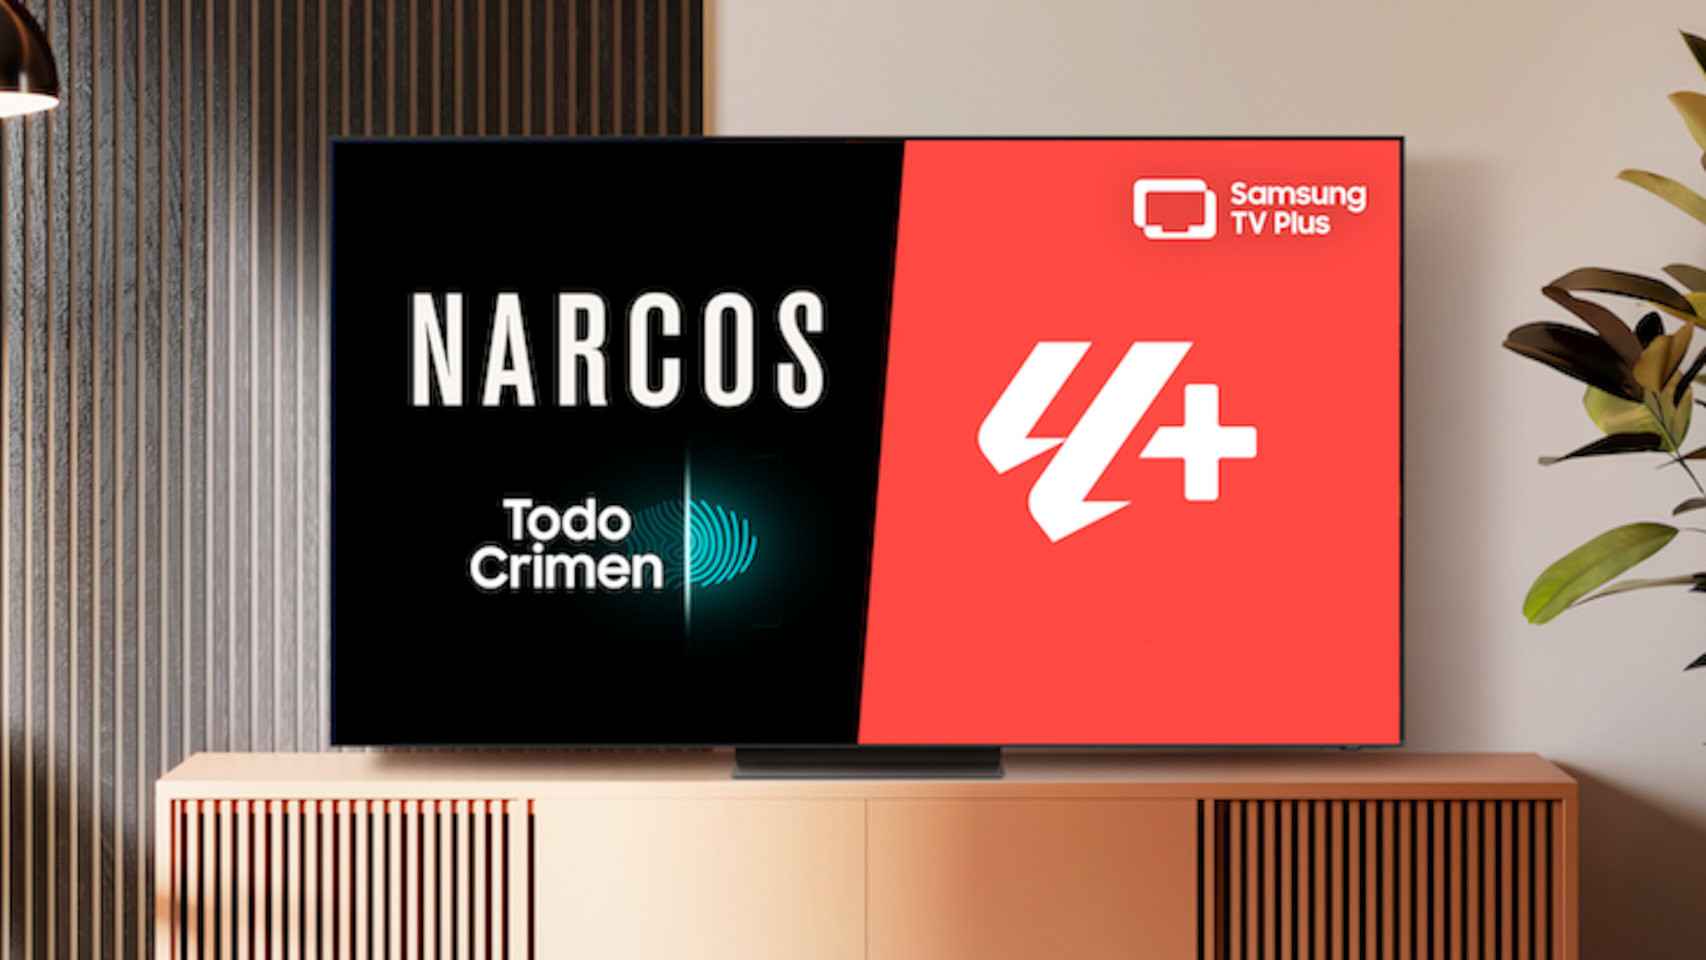 Los televisores Samsung ahora ofrecen acceso a LA LIGA+ y a Narcos